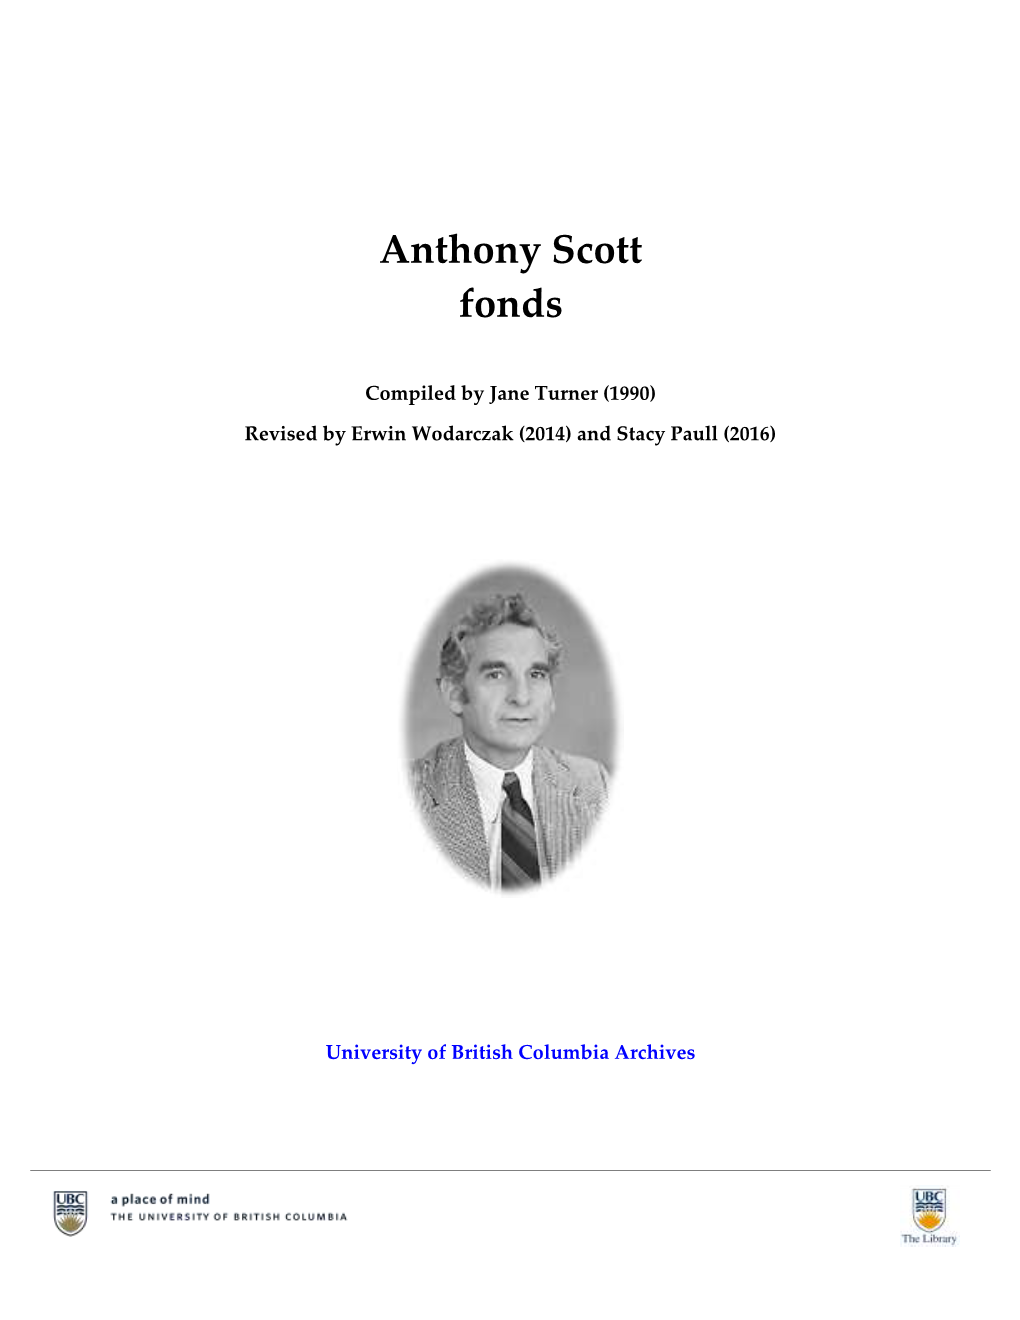 Anthony Scott Fonds